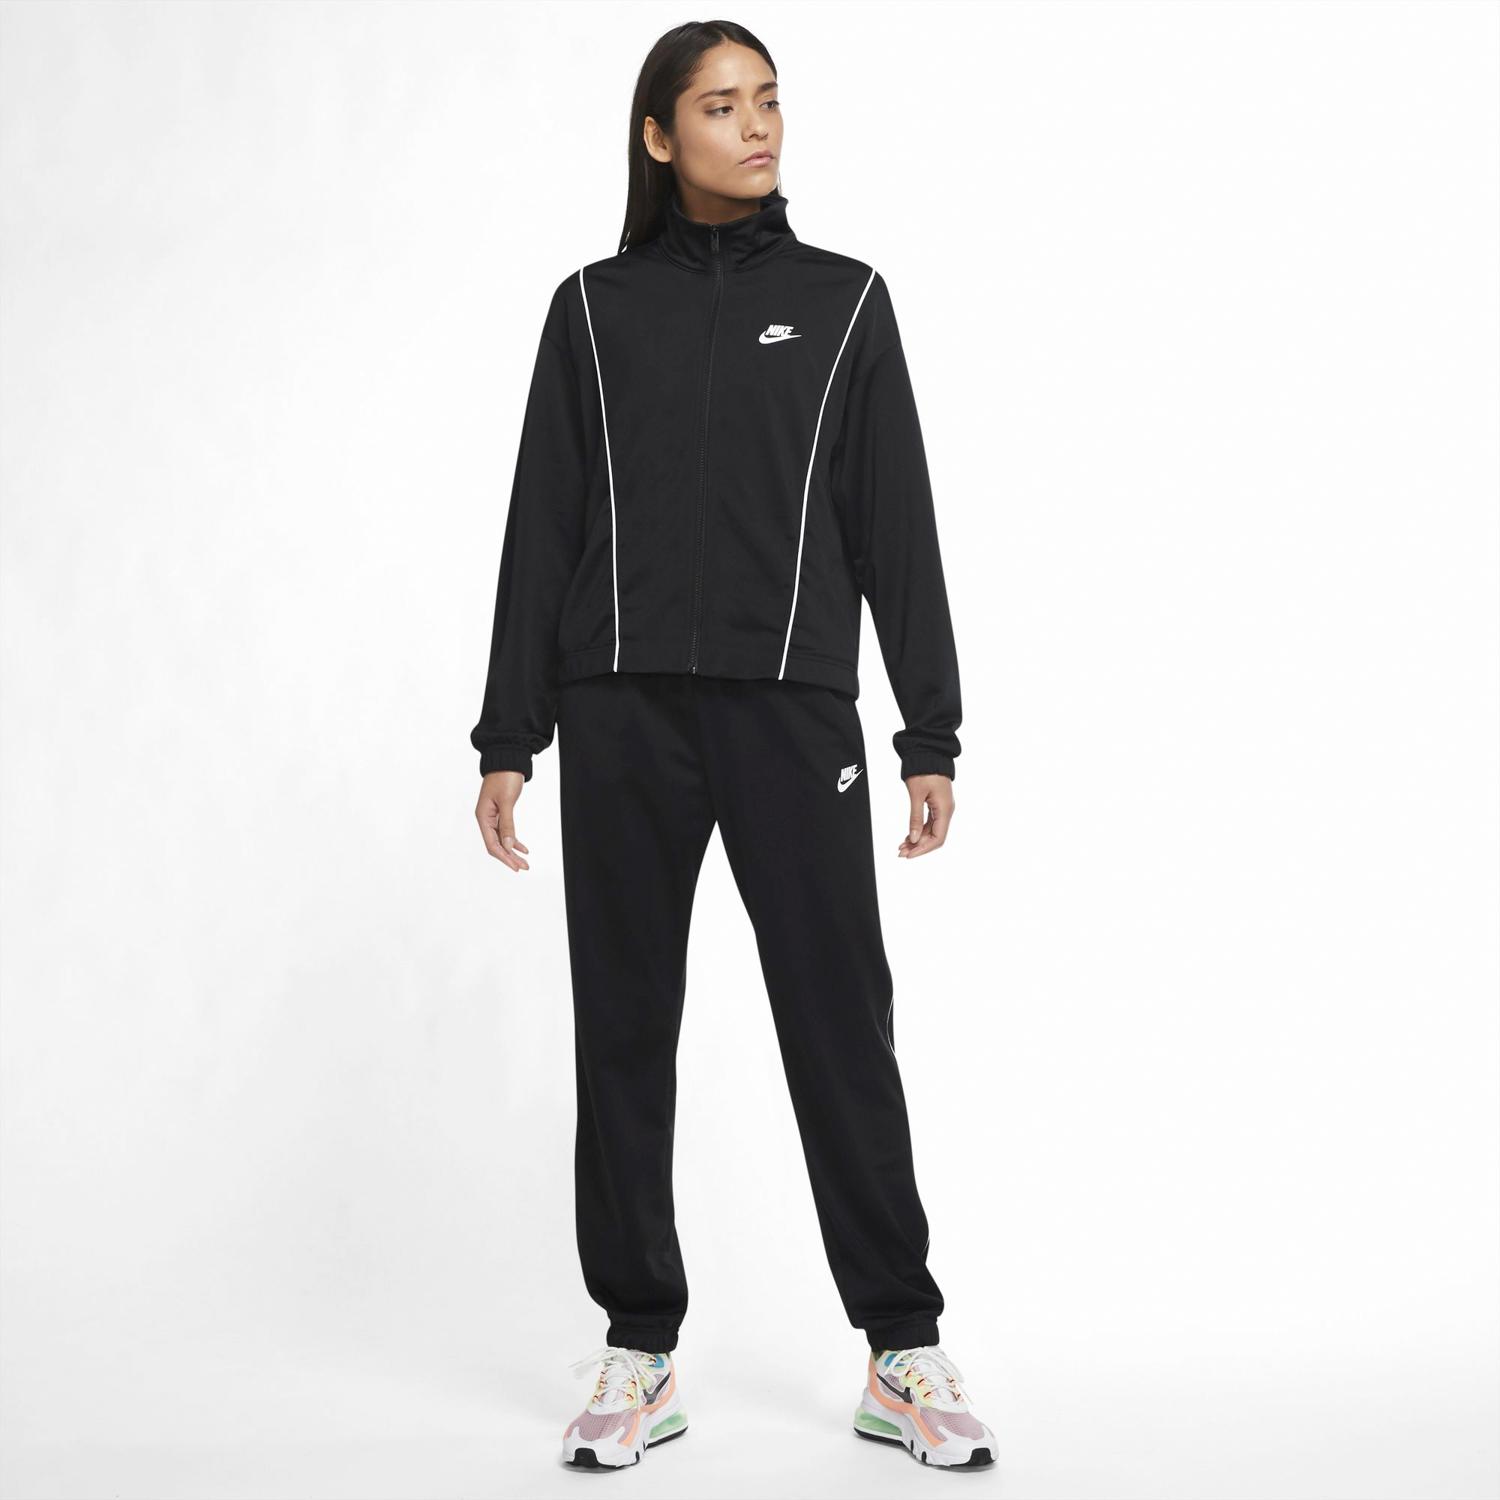 Nike Mujer Sprinter